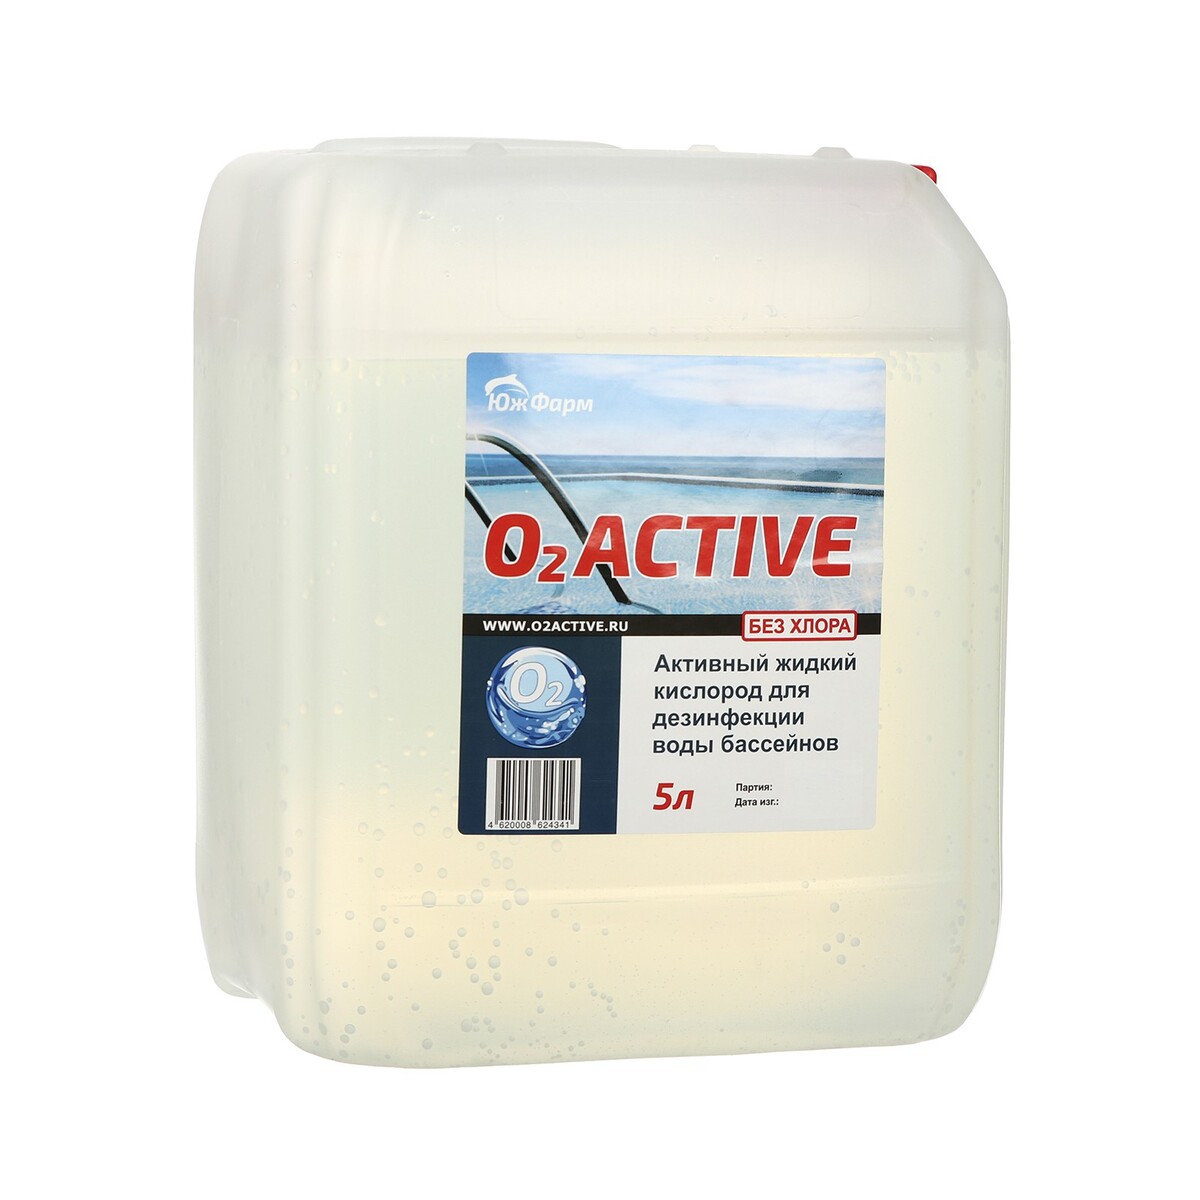 О2 active, средство для дезинфекции воды бассейнов, 5 л bayrol быстрорастворимый хлор для ударной дезинфекции воды chlorifix 5 кг